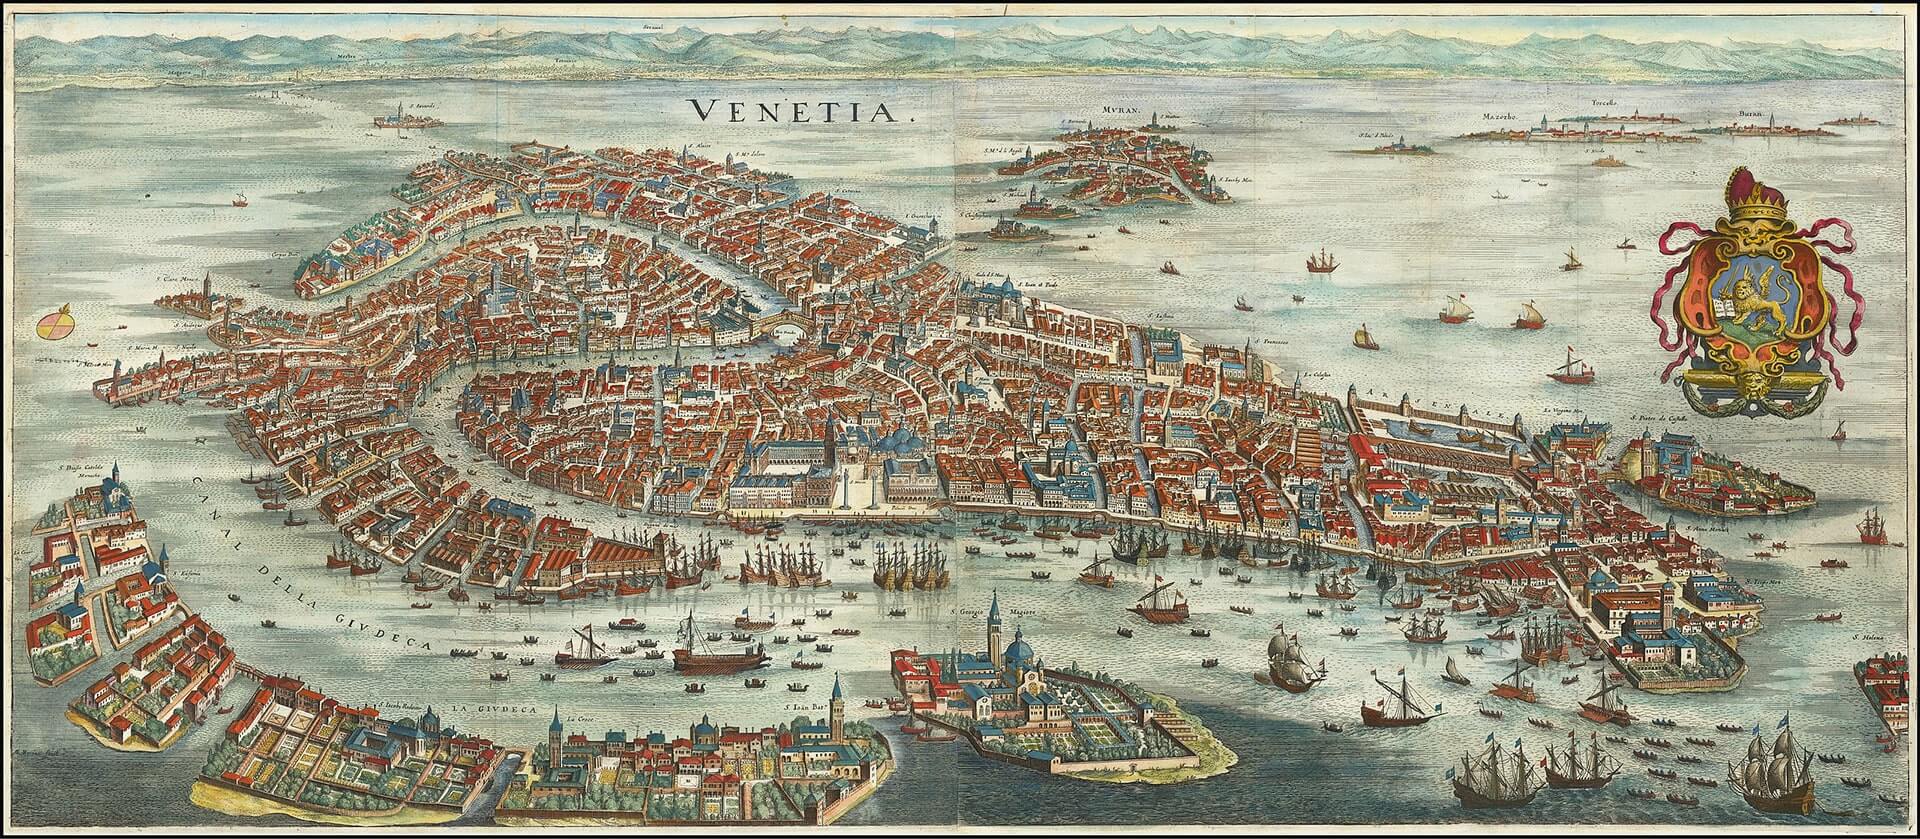 Η Βενετία το 1636 σε απόδοση του Ματταίους Μέριαν [Matthäus Merian].